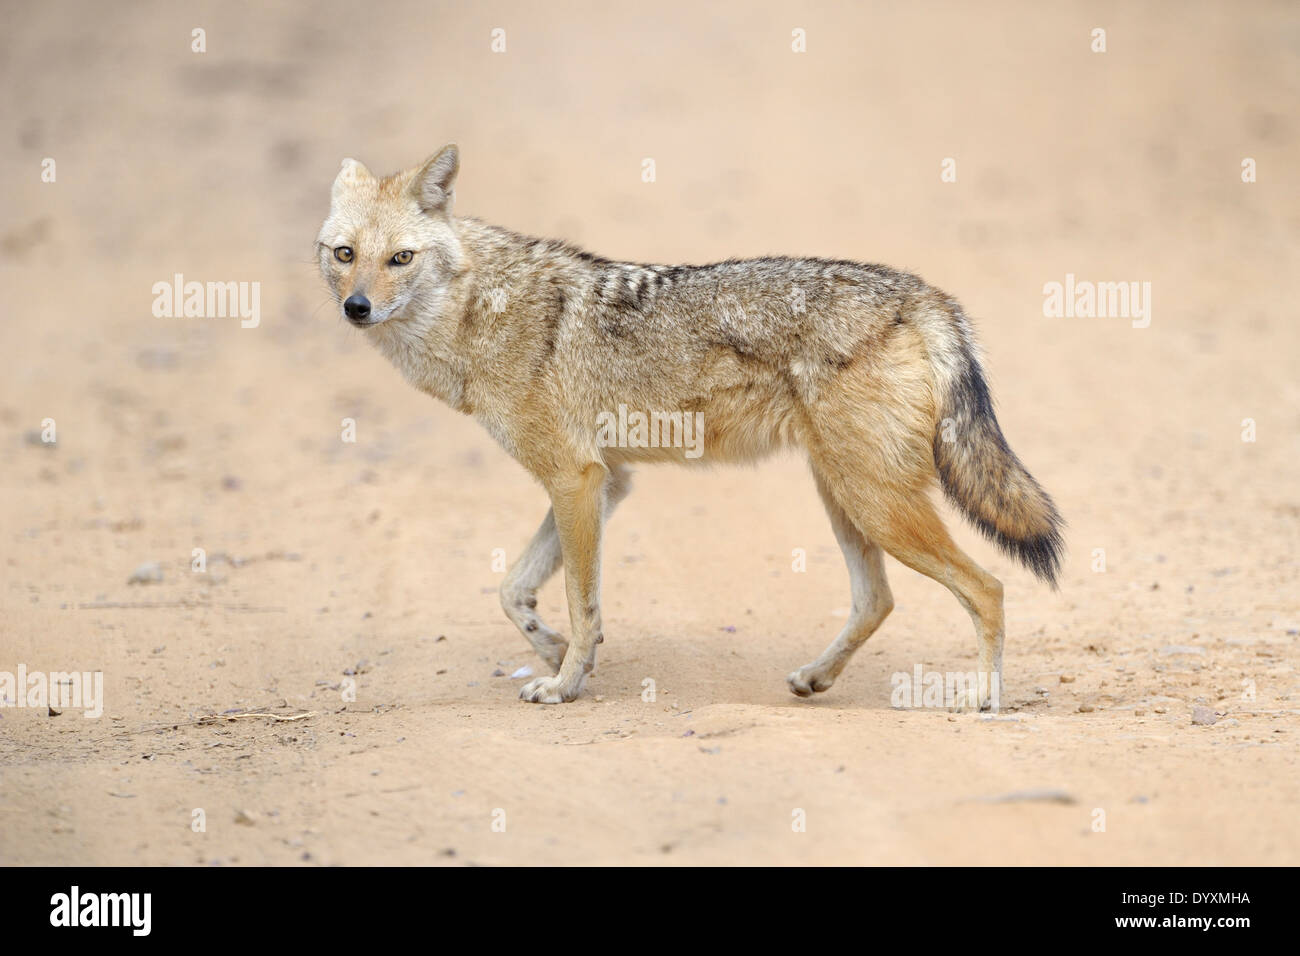 El Chacal dorado (Canis aureus) caminar sobre la arena. Foto de stock